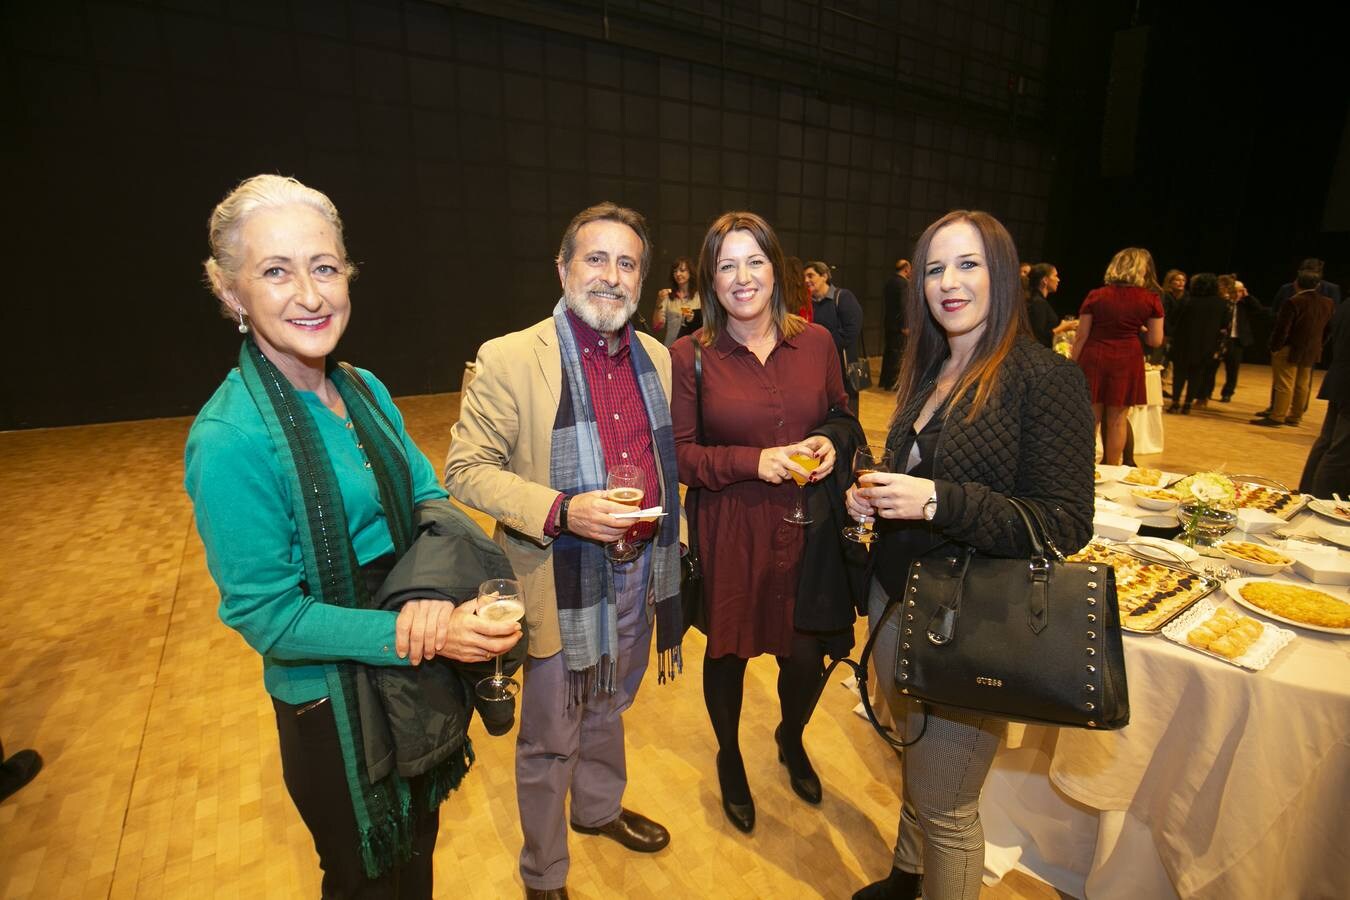 Numerosos rostros conocidos en el acto celebrado en el Teatro de Caja Granada